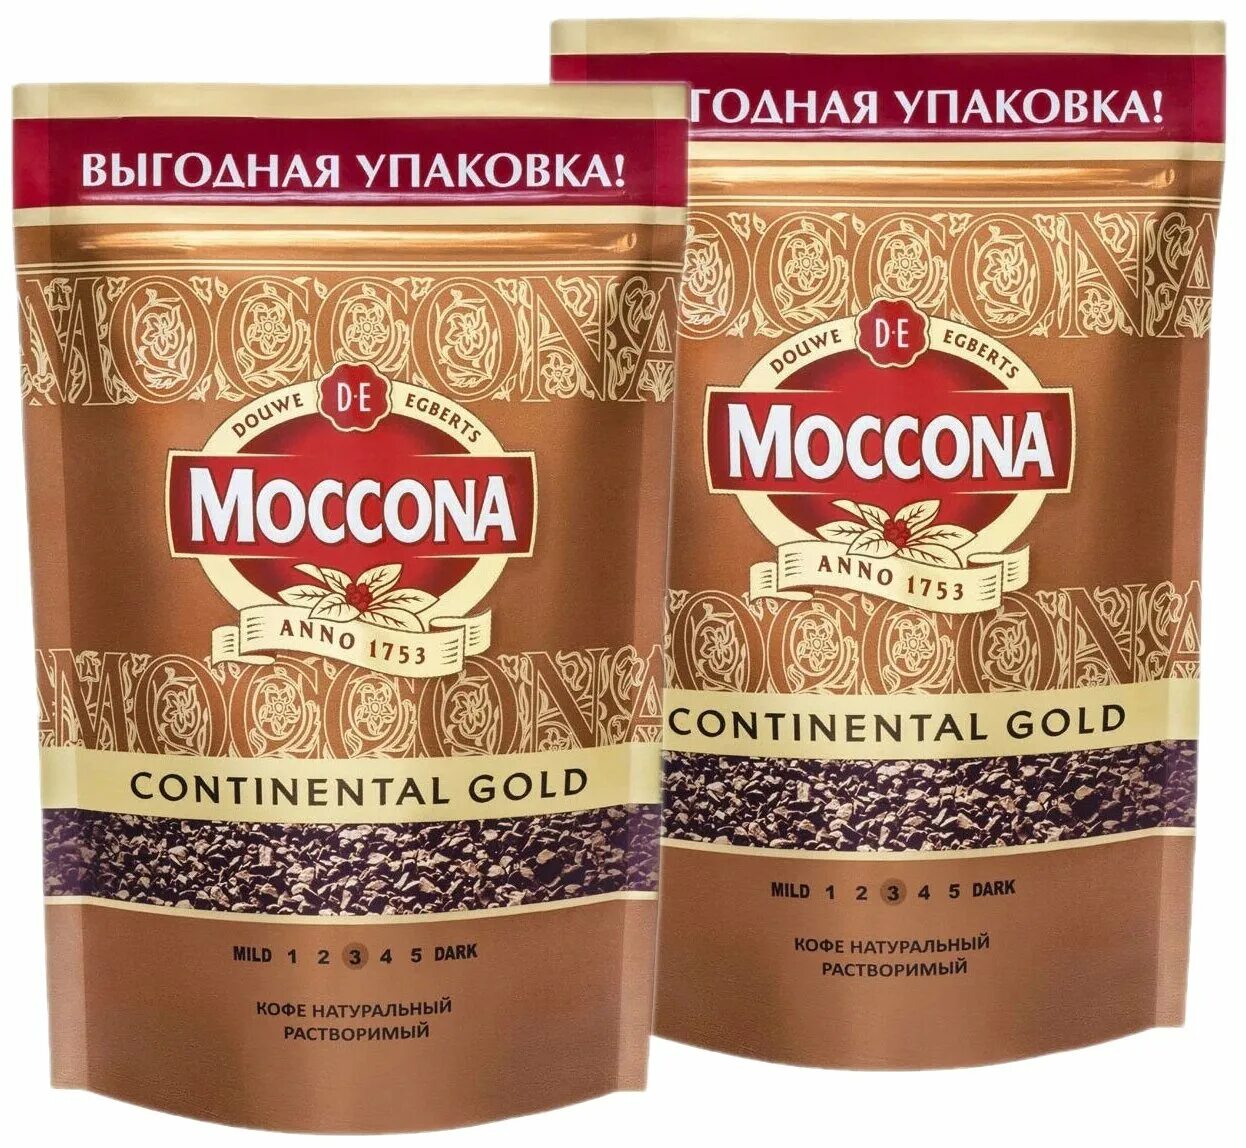 Moccona gold. Moccona Continental Gold. Кофе растворимый Moccona Continental. Кофе Моккона Континенталь Голд 75г. Moccona Continental Gold кофе растворимый 95г.